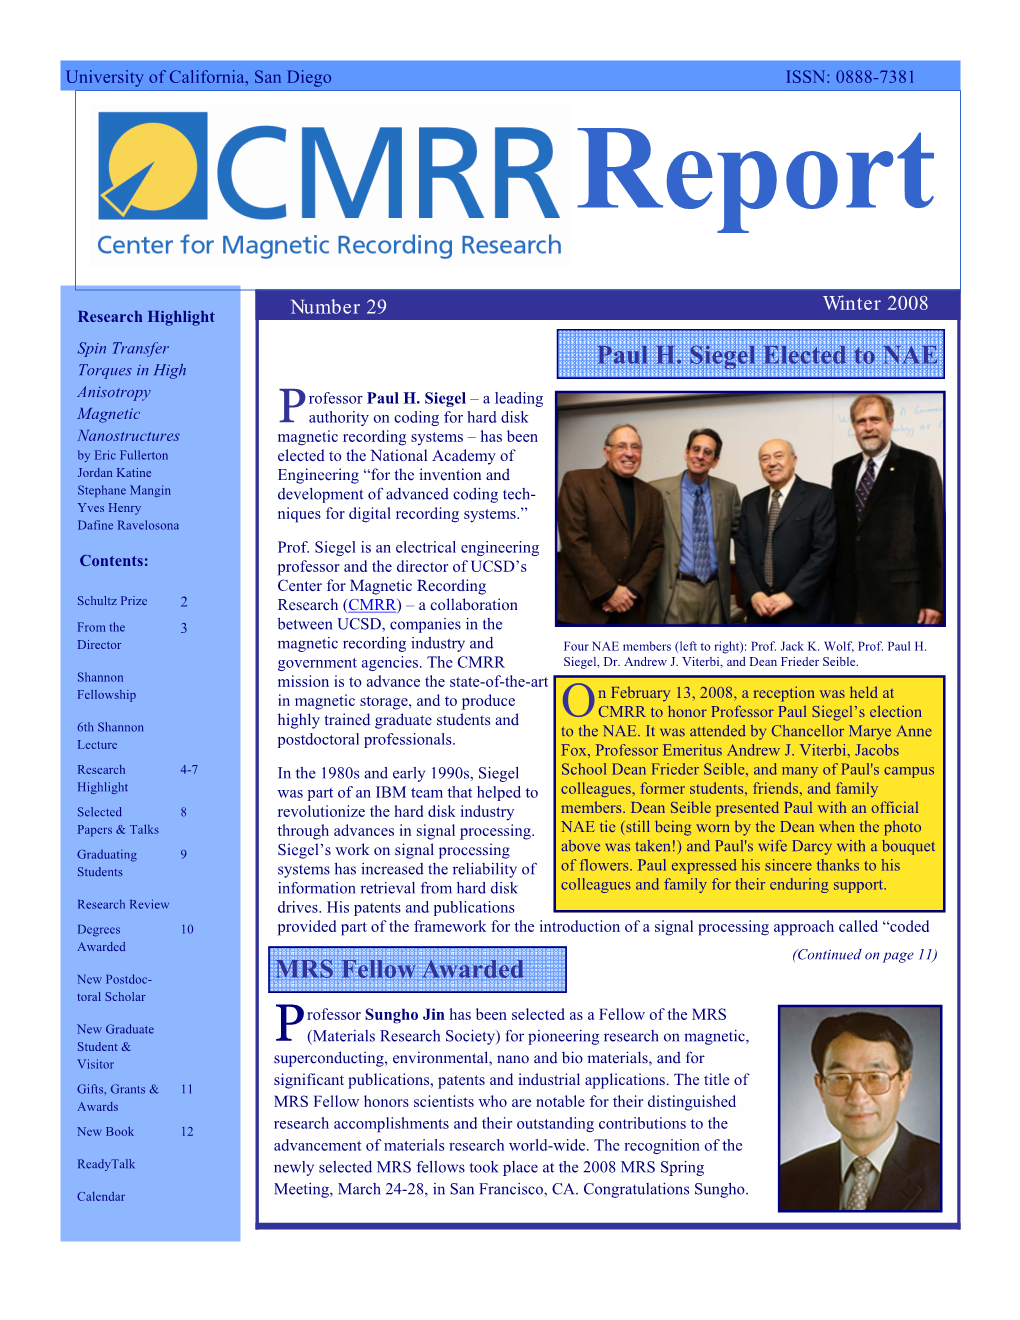 CMRR Report Number 29